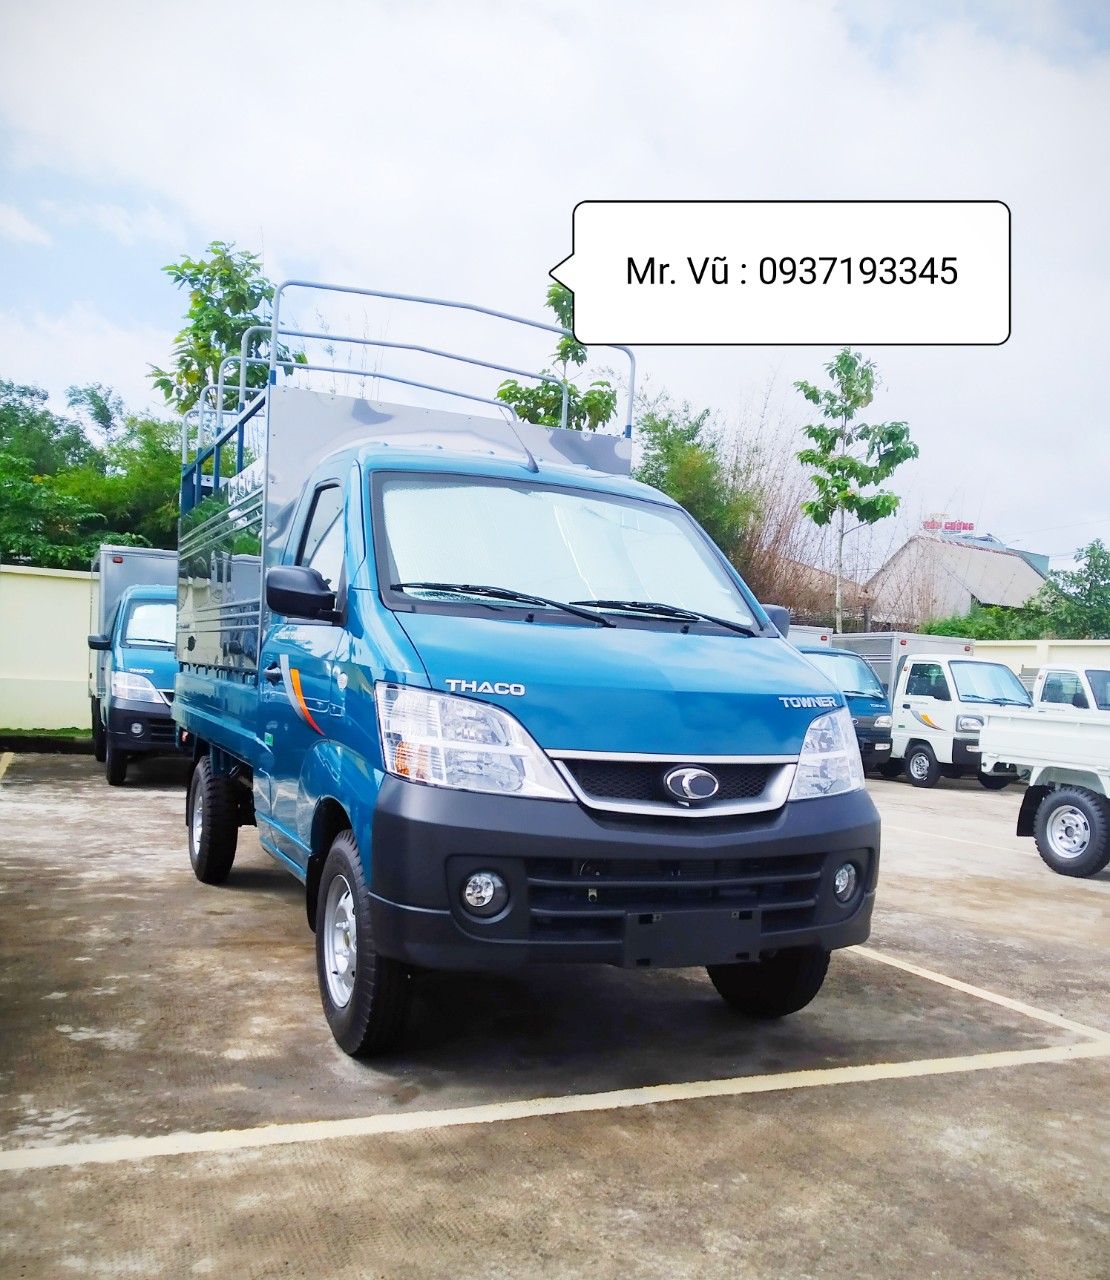 Cần mua bán xe tải Thaco Towner990- 990kg giá tốt, hỗ trợ trả góp Bà Rịa Vũng Tàu-0